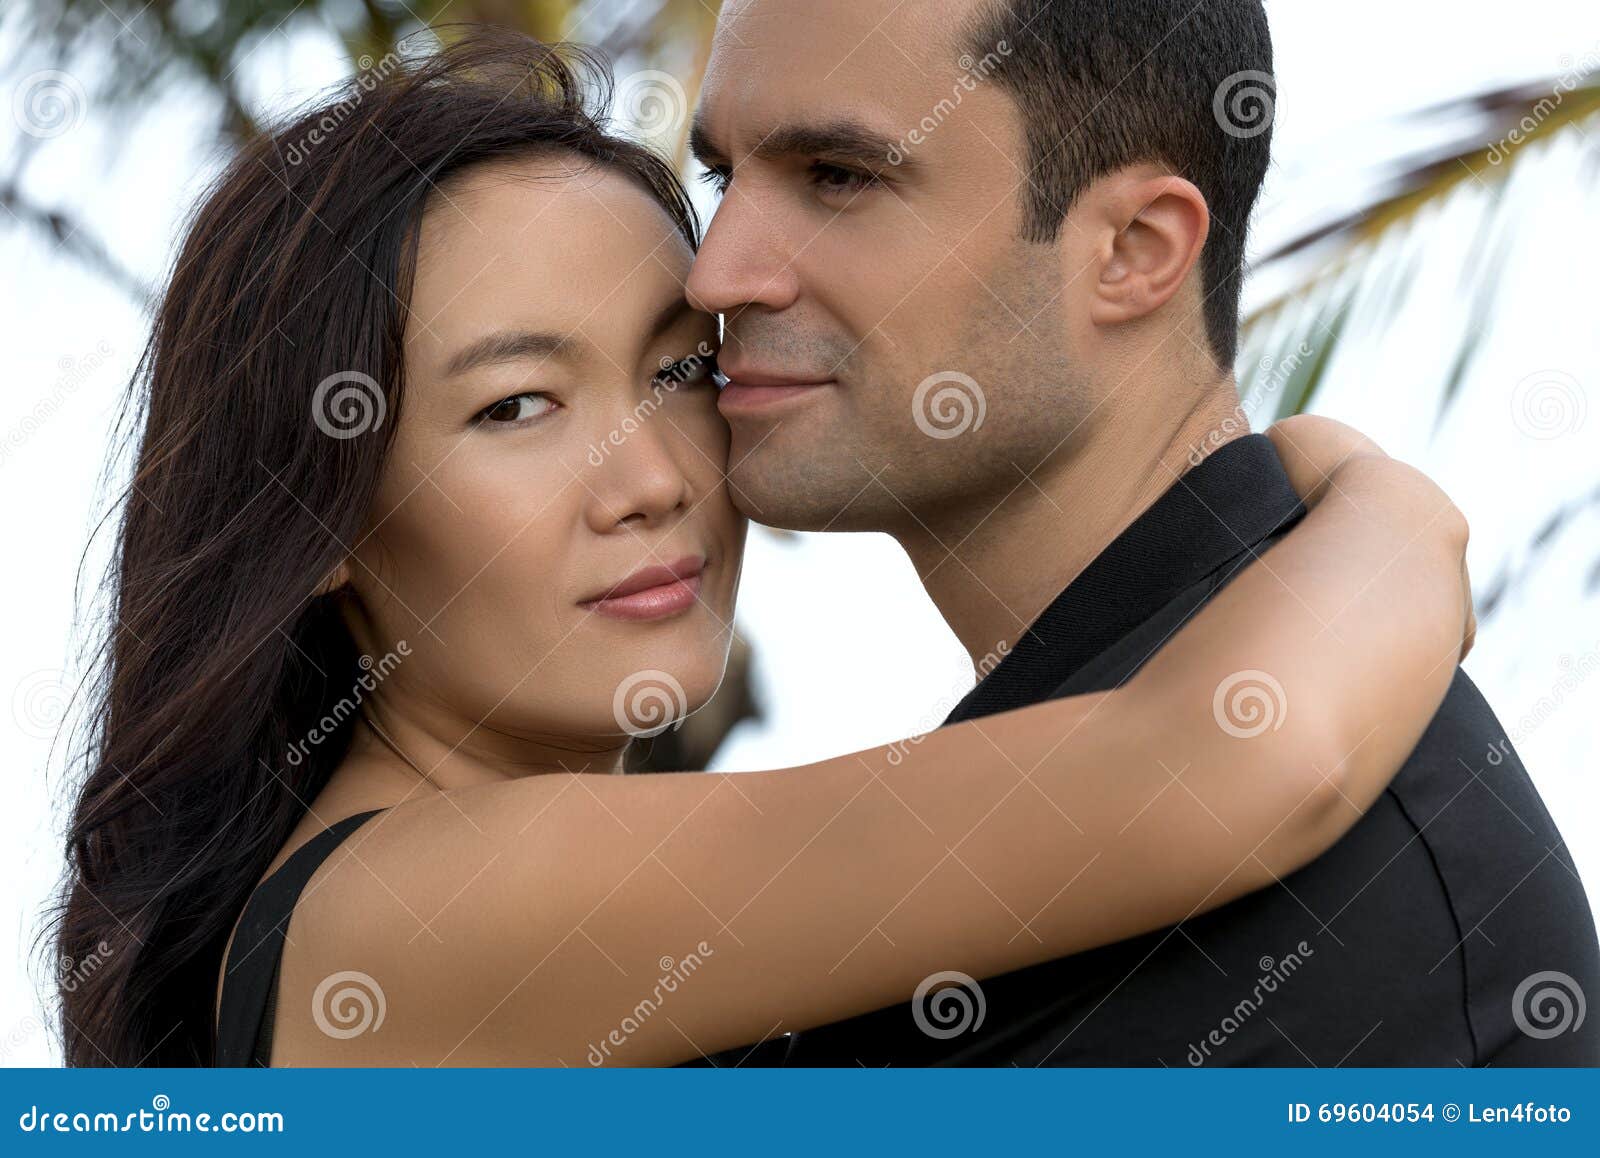 Interracial Heterosexual Sensual Couple Stock Photos